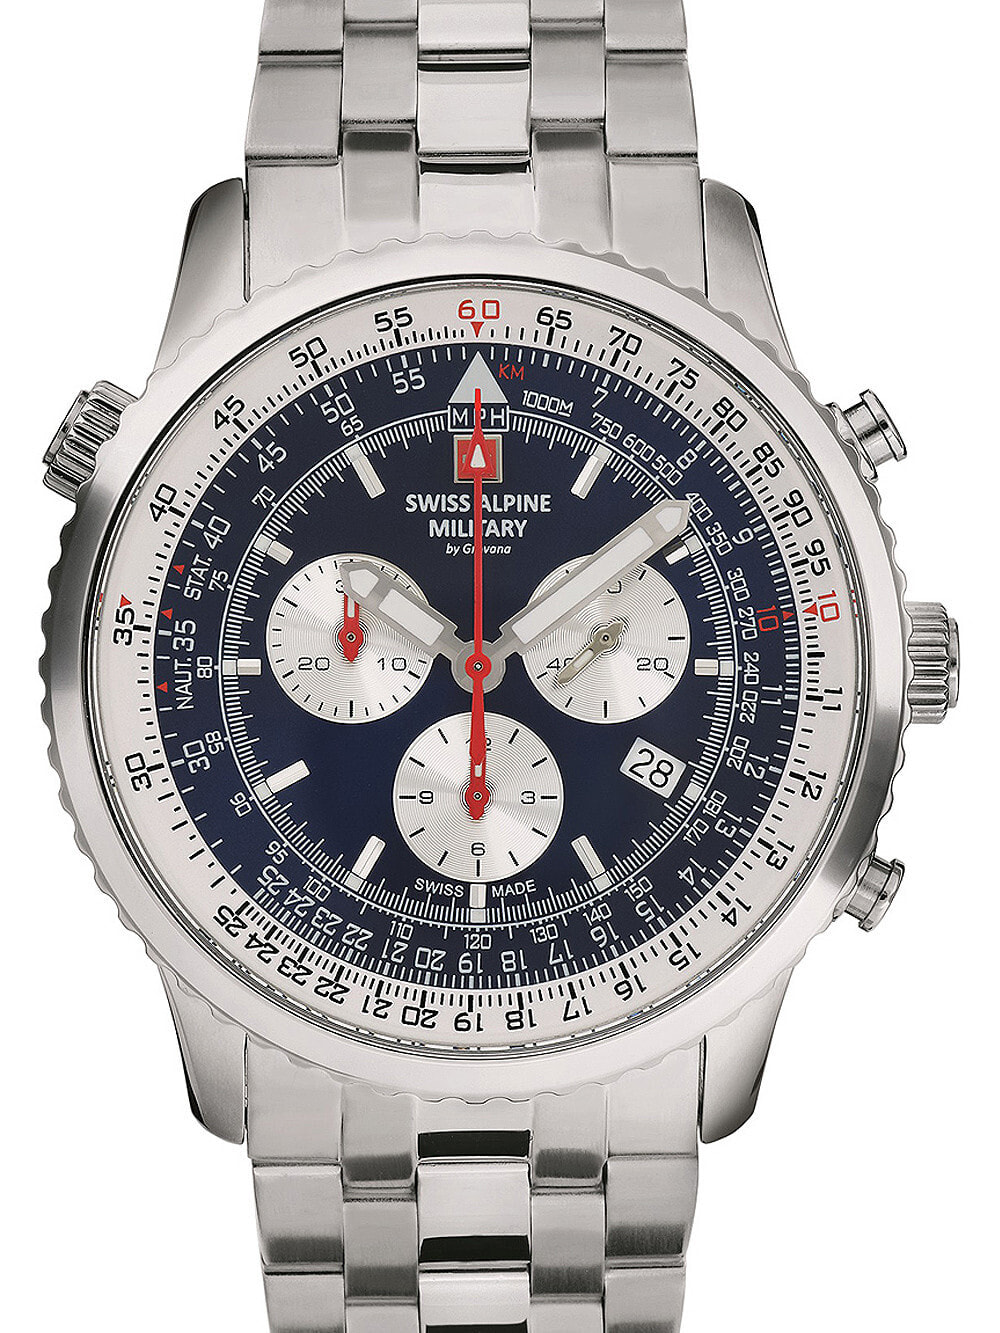 Мужские наручные часы с серебряным браслетом Swiss Alpine Military 7078.9135 chrono mens 45mm 10ATM